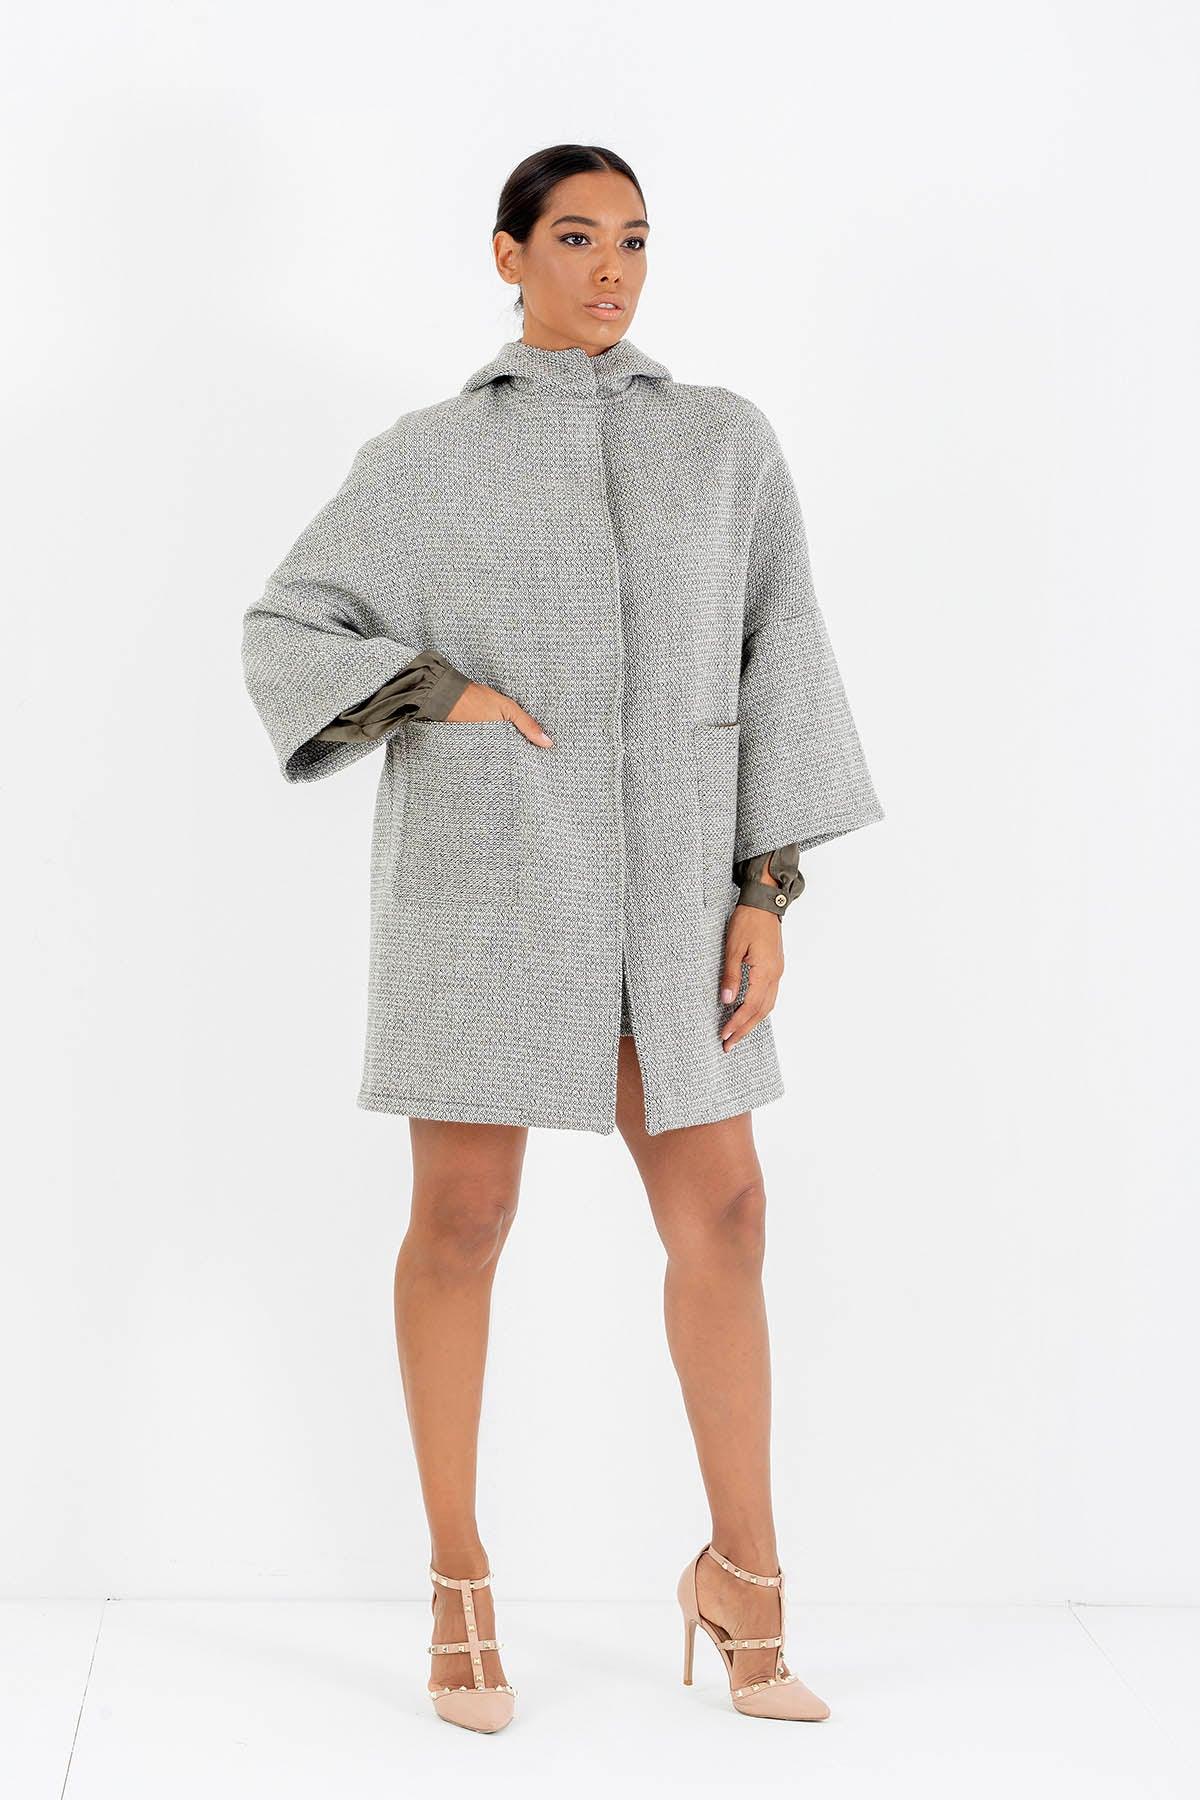 Cappotto in calda lana biologica Eleonora invernale comodo cinta in vita brand malia lab abbigliamento biologico sostenibile abbigliamento sartoriale